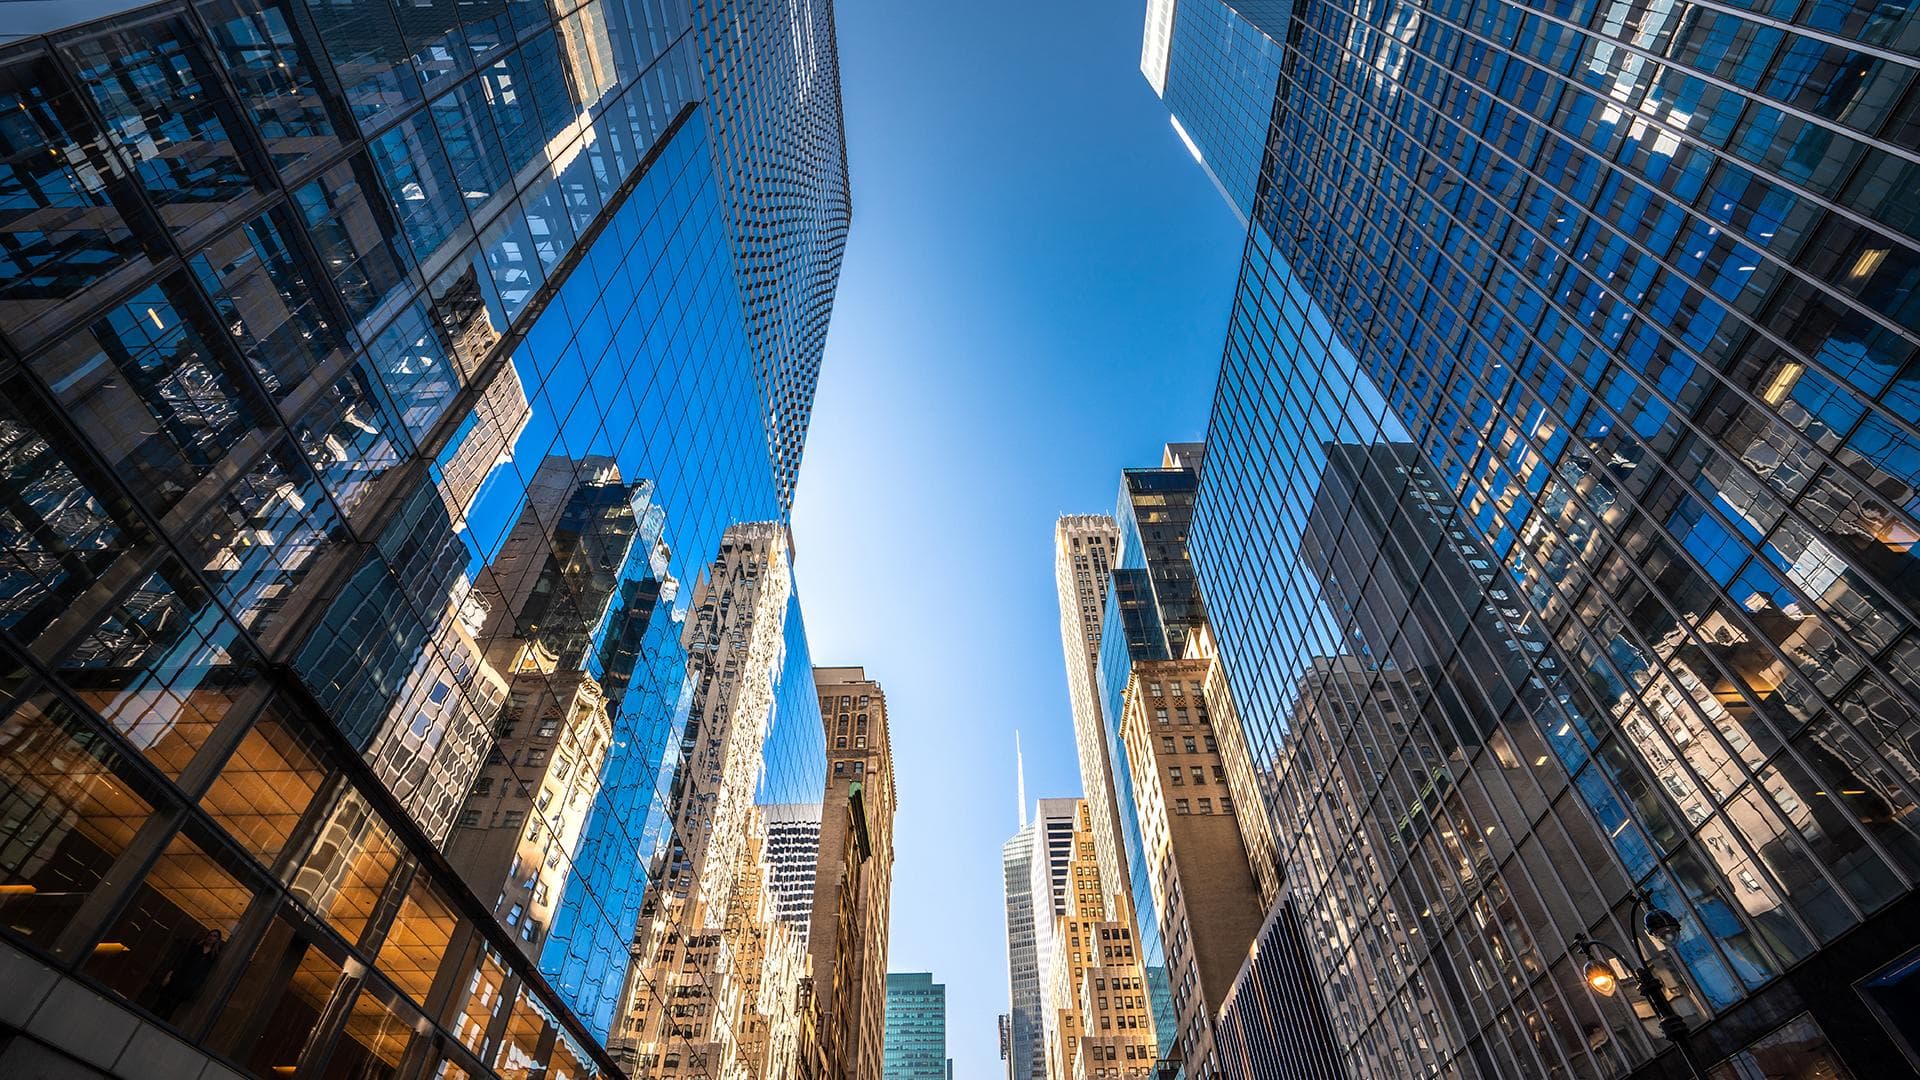 Futuristic skyscrapers in New York City